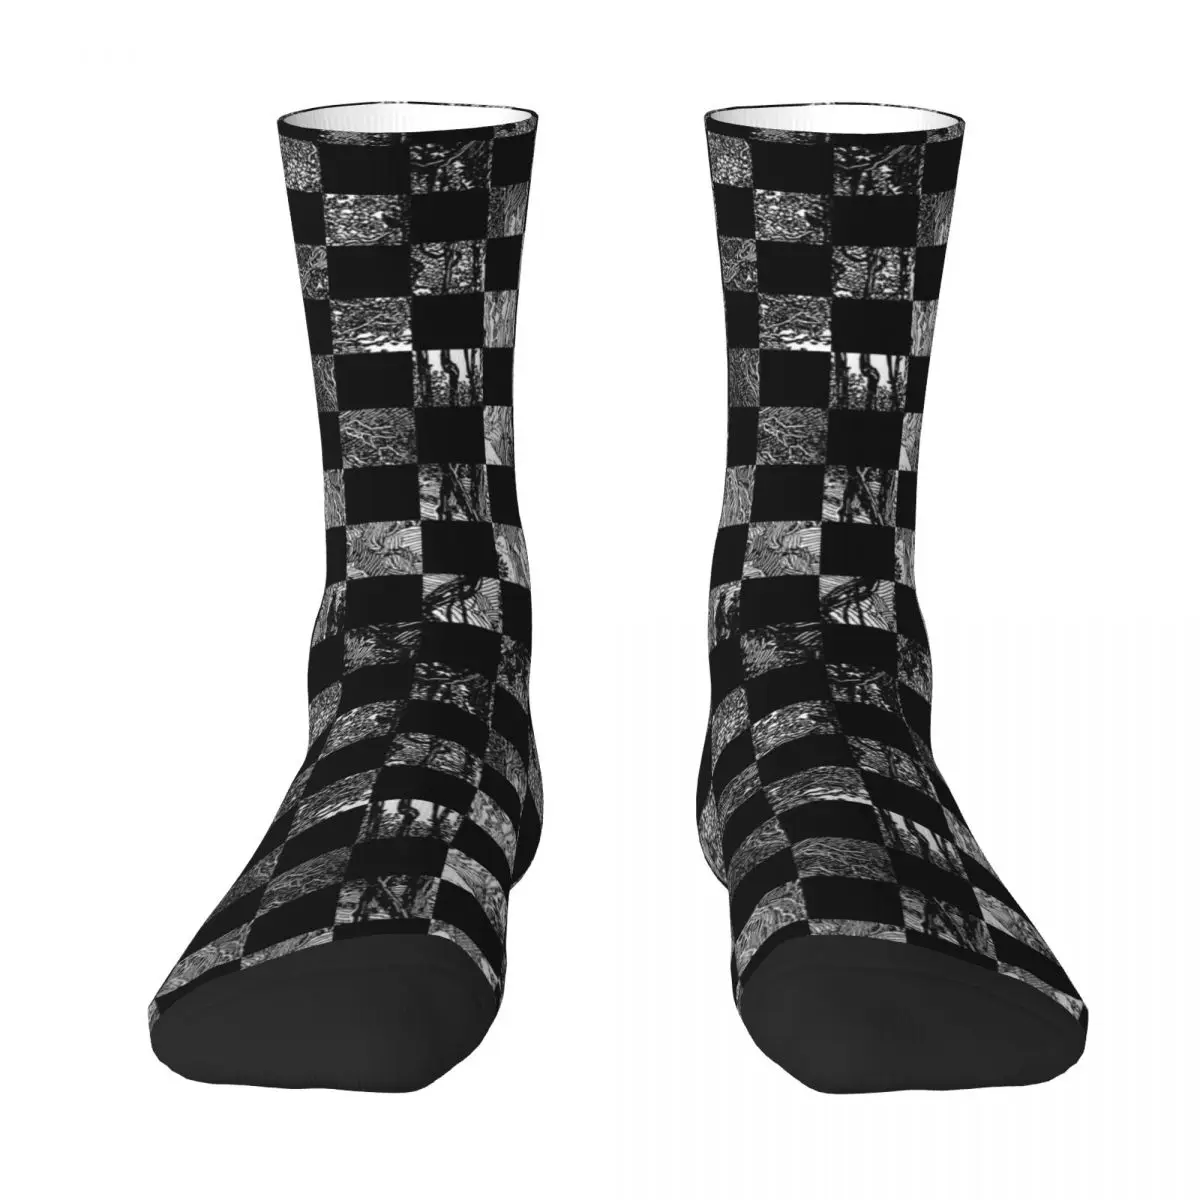 Copper engraving chessboard Adult Socks checkerboard,flower Unisex socks,men Socks women Socks